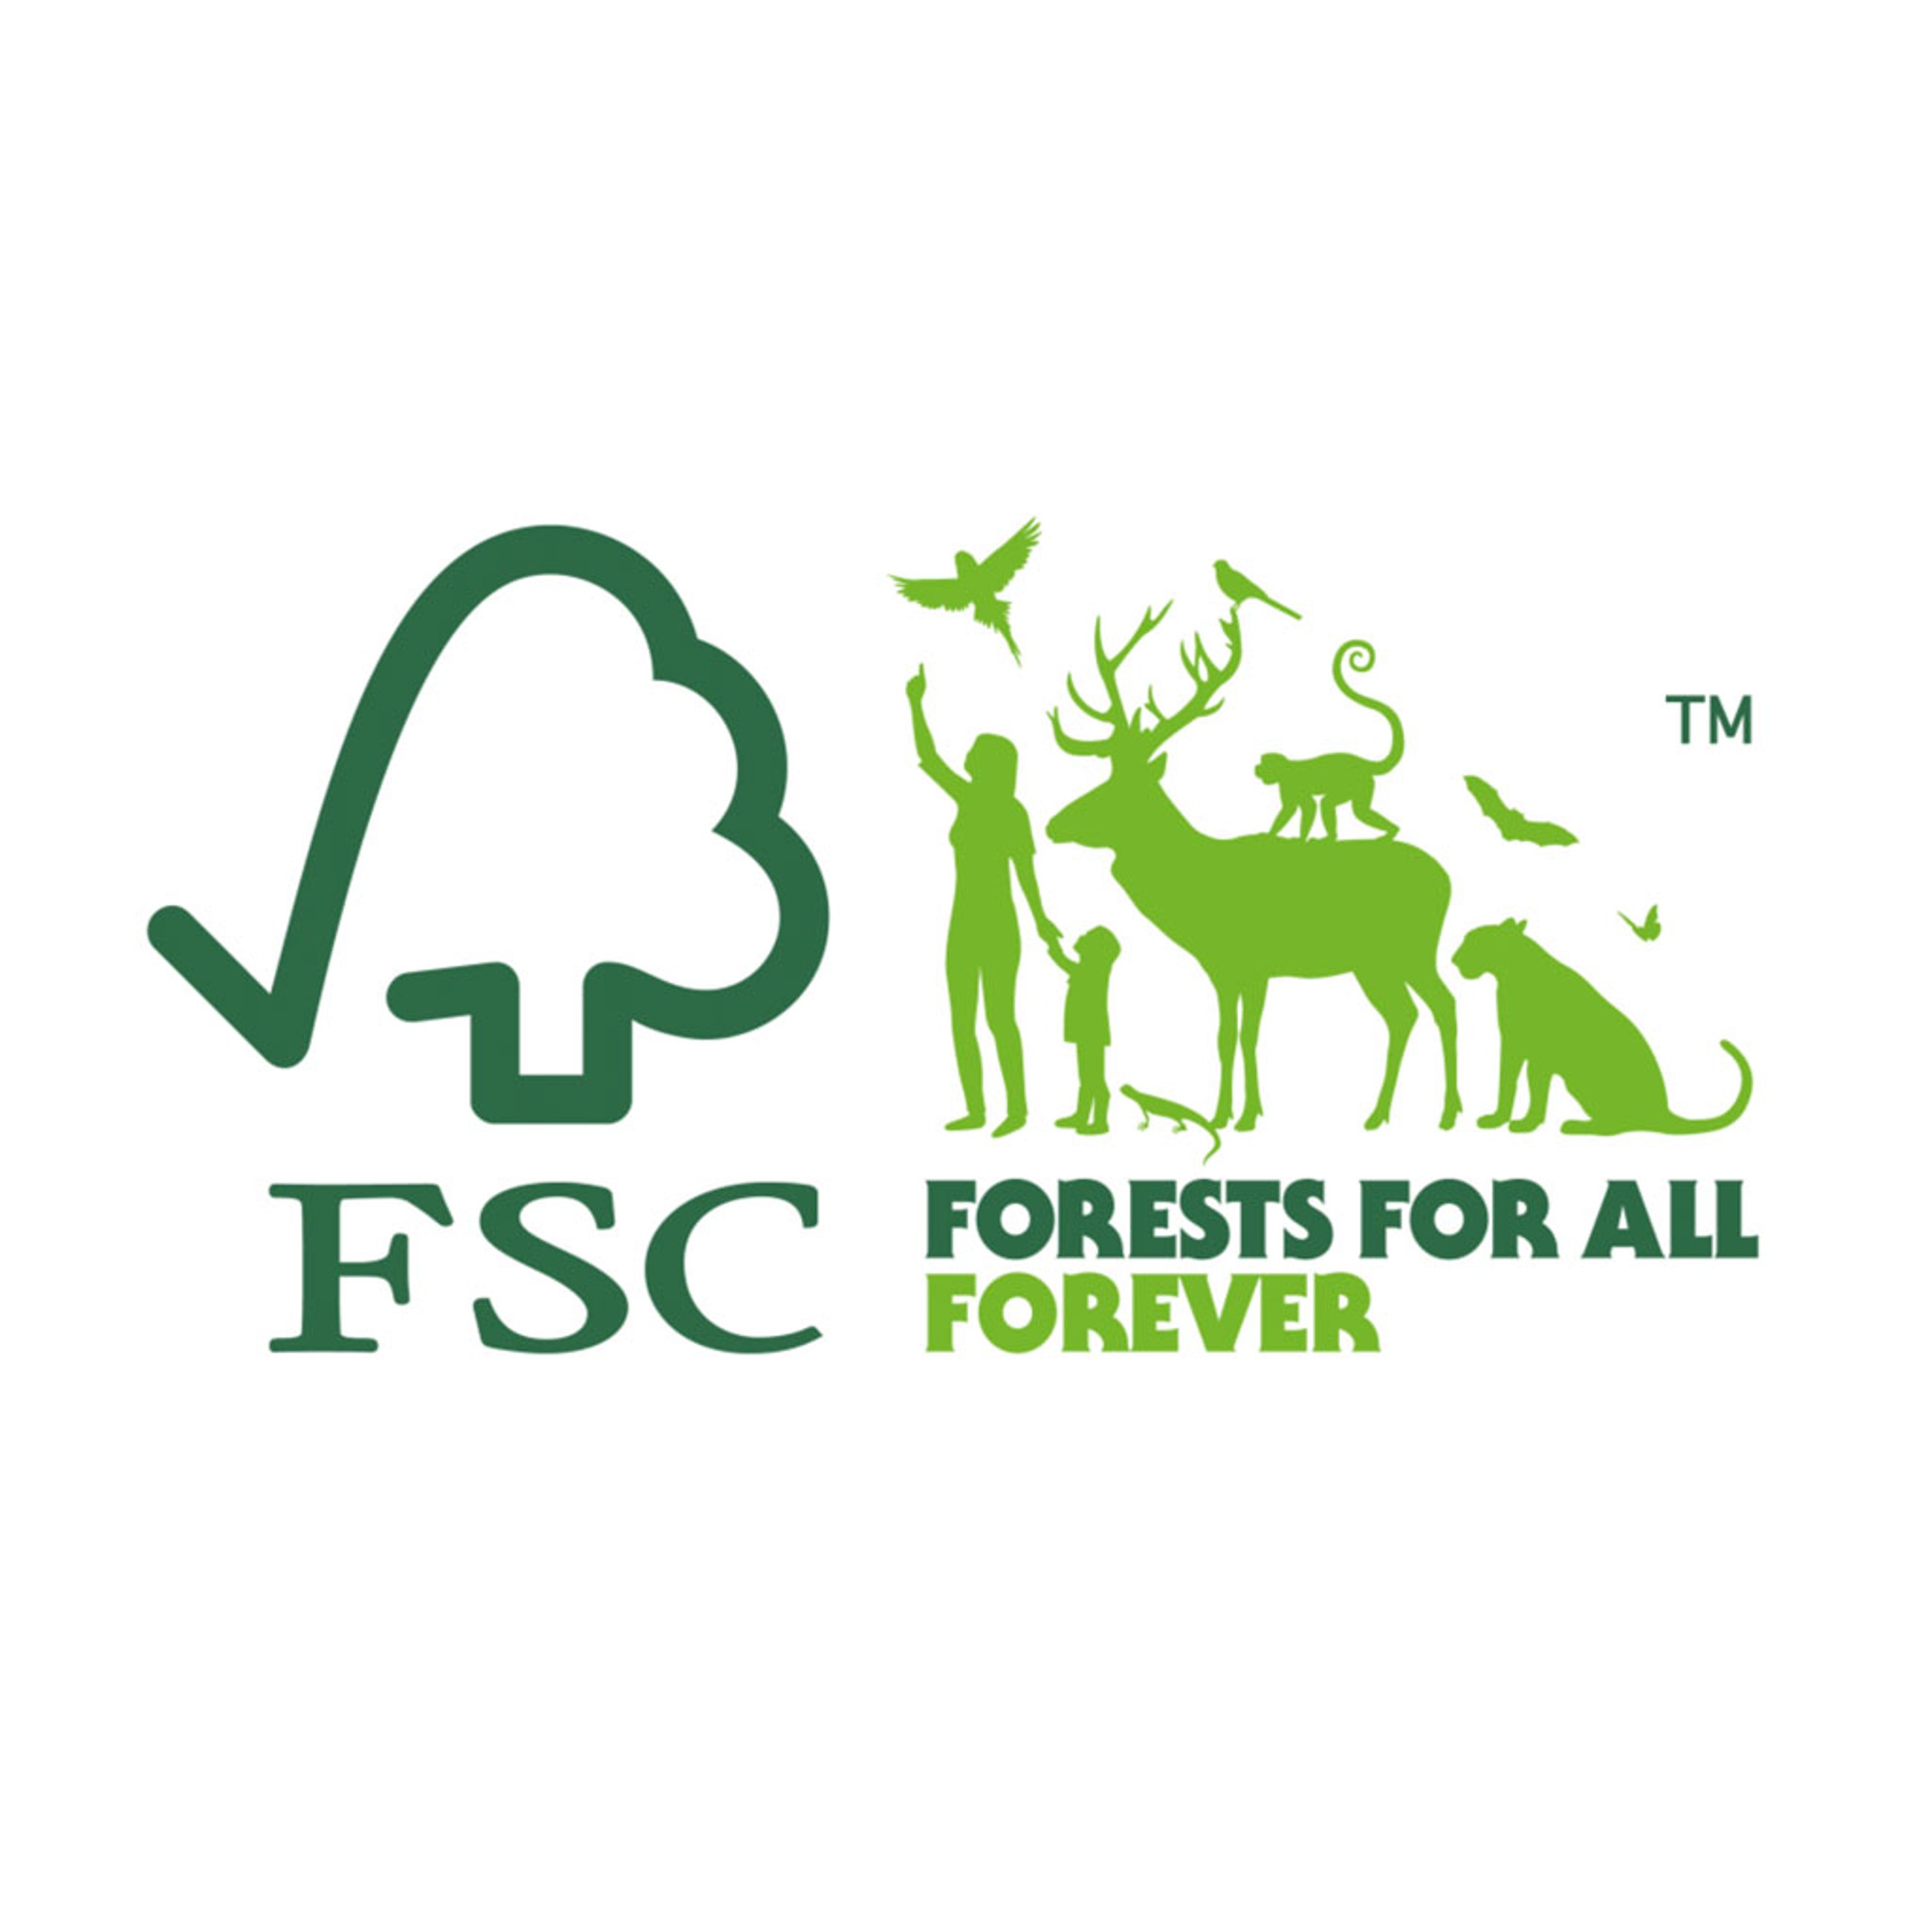 certyfikat FSC - Forest for all